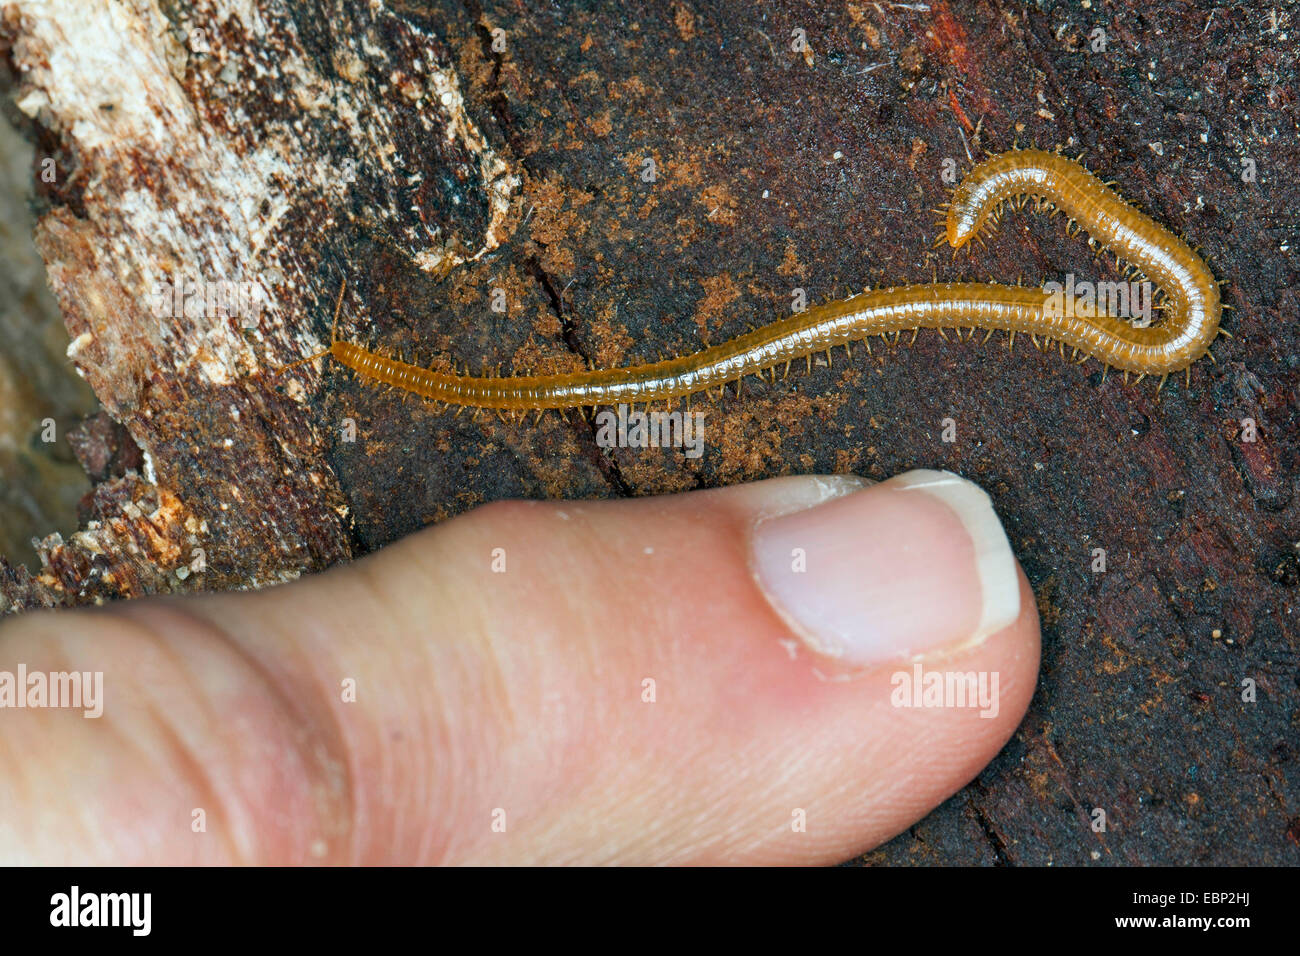 geophilomorphs (Henia vesuviana, Chaetechelyne vesuviana), with a finger for size comparison, France, Corsica Stock Photo